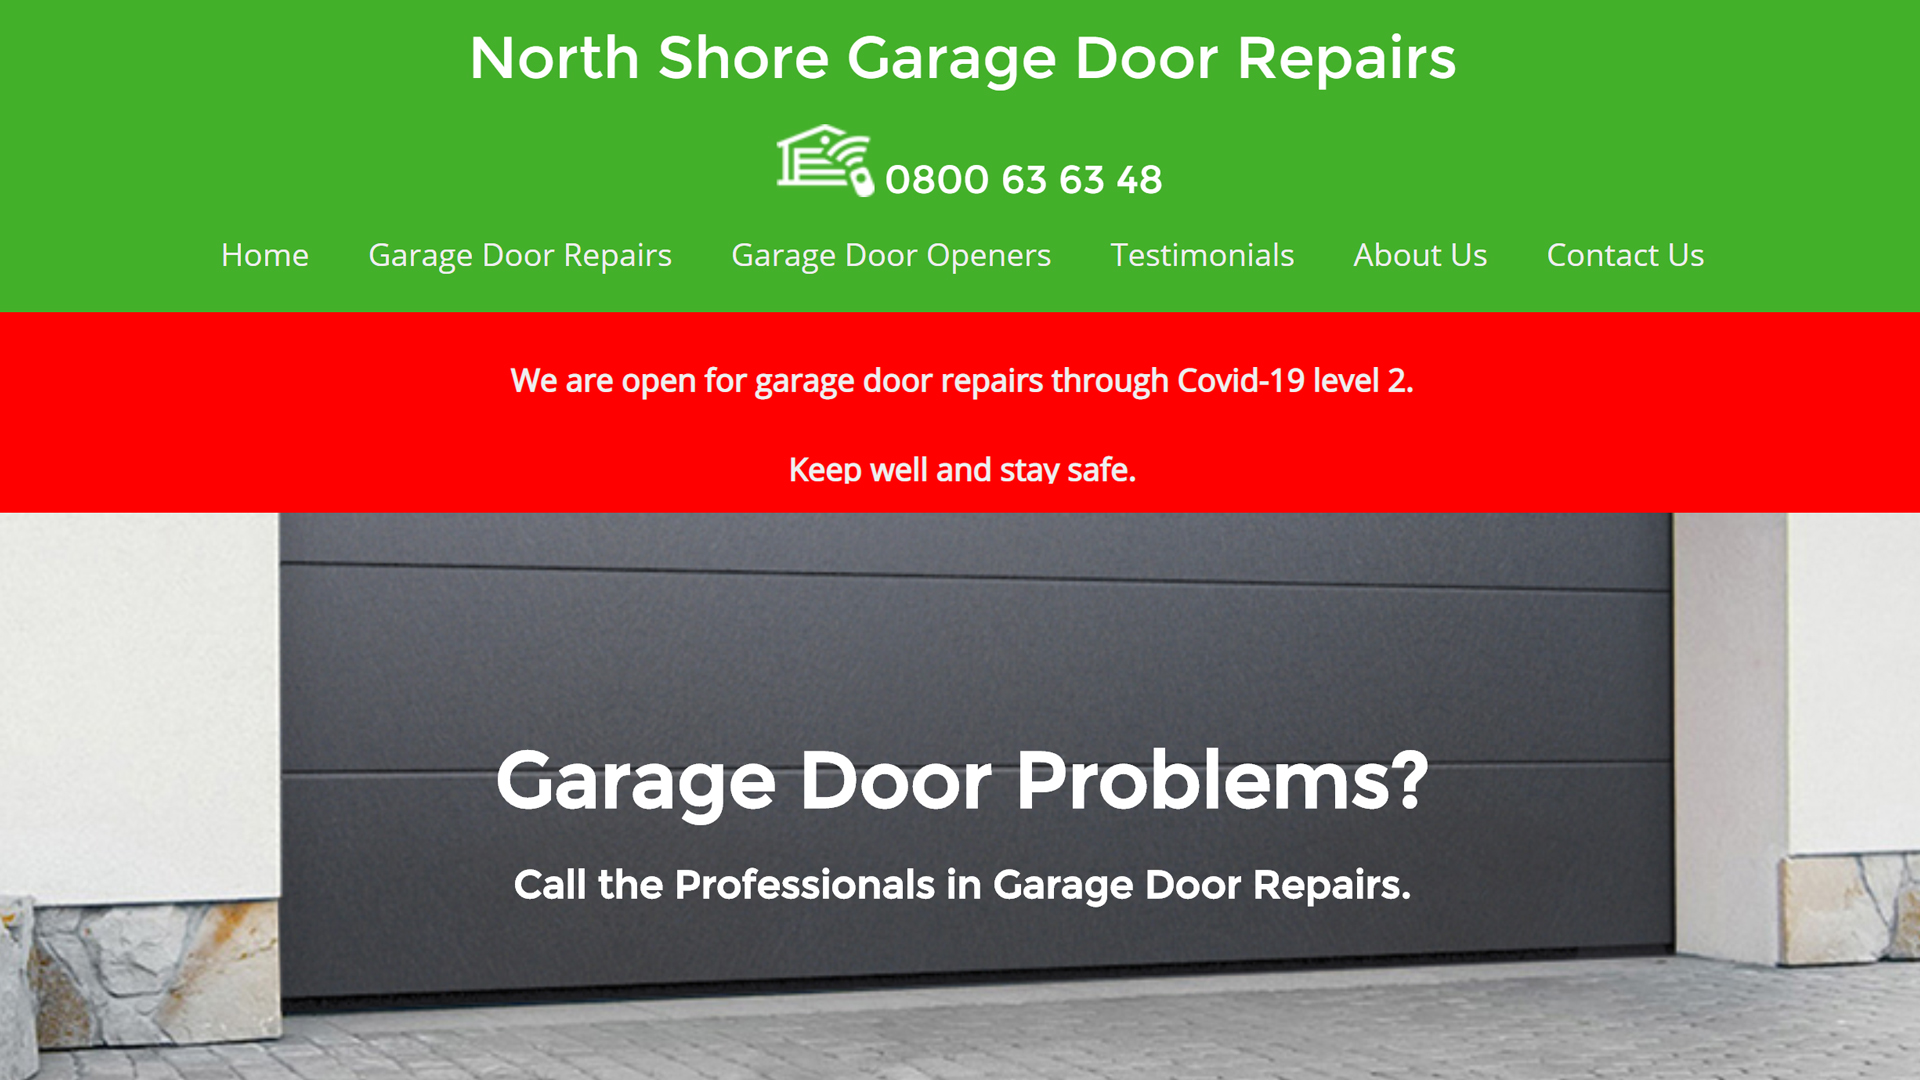 North Shore Garage Door Repairs